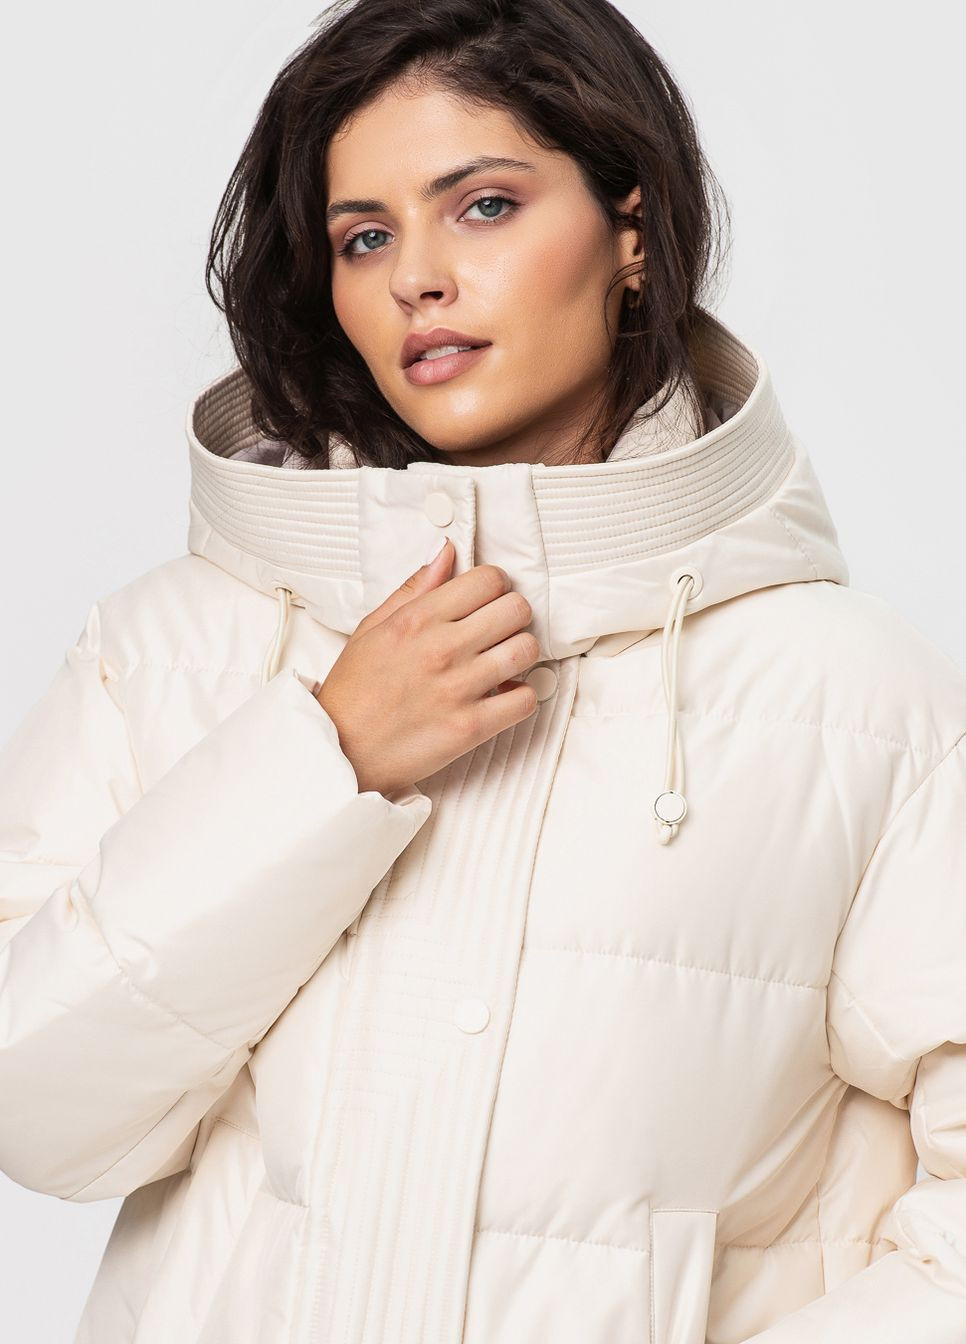 Молочная зимняя куртка-пальто с капюшоном модель Icebear 3795